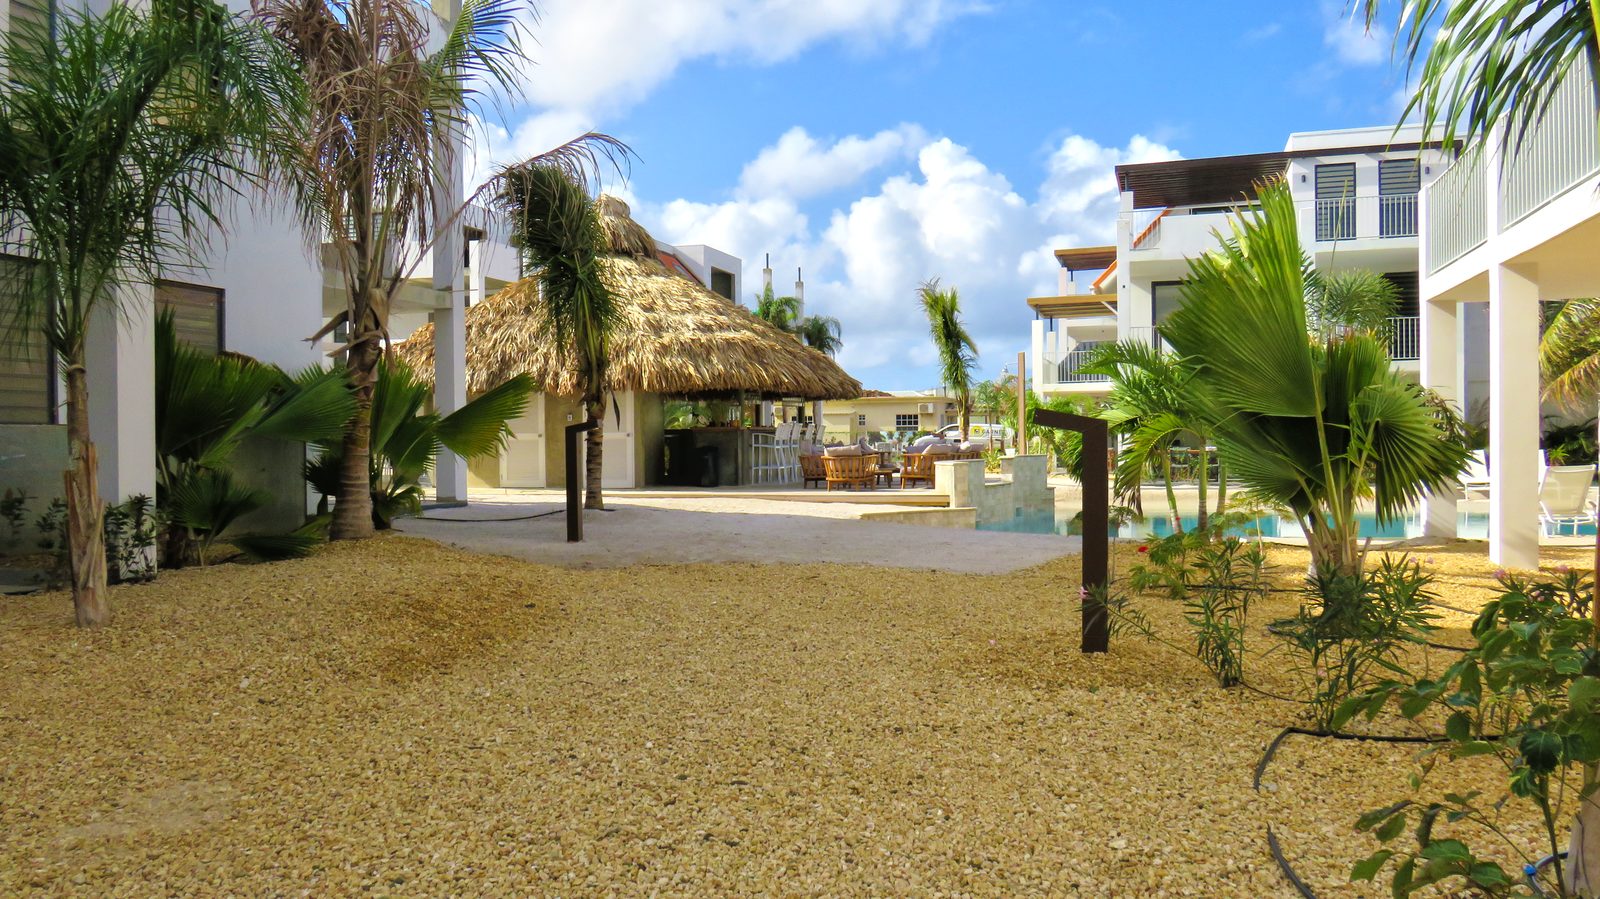 Um dos melhores locais para ficar em Bonaire é no Resort Bonaire. É um bom lugar para casais e famílias relaxarem e desfrutarem.